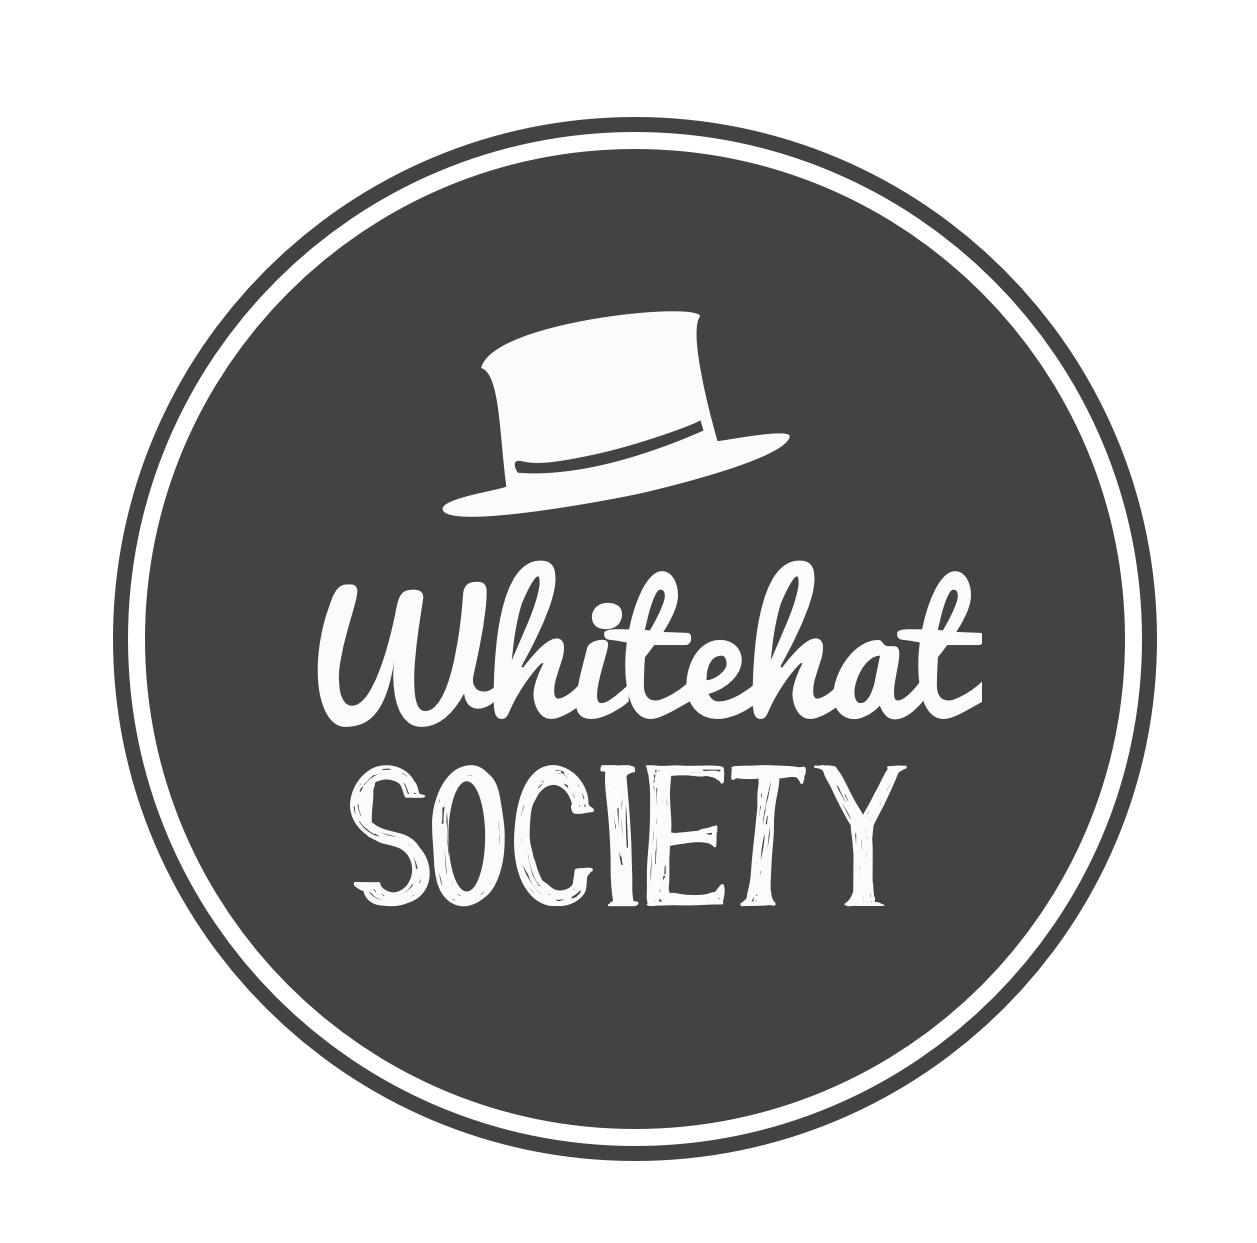 SMU Whitehats Society